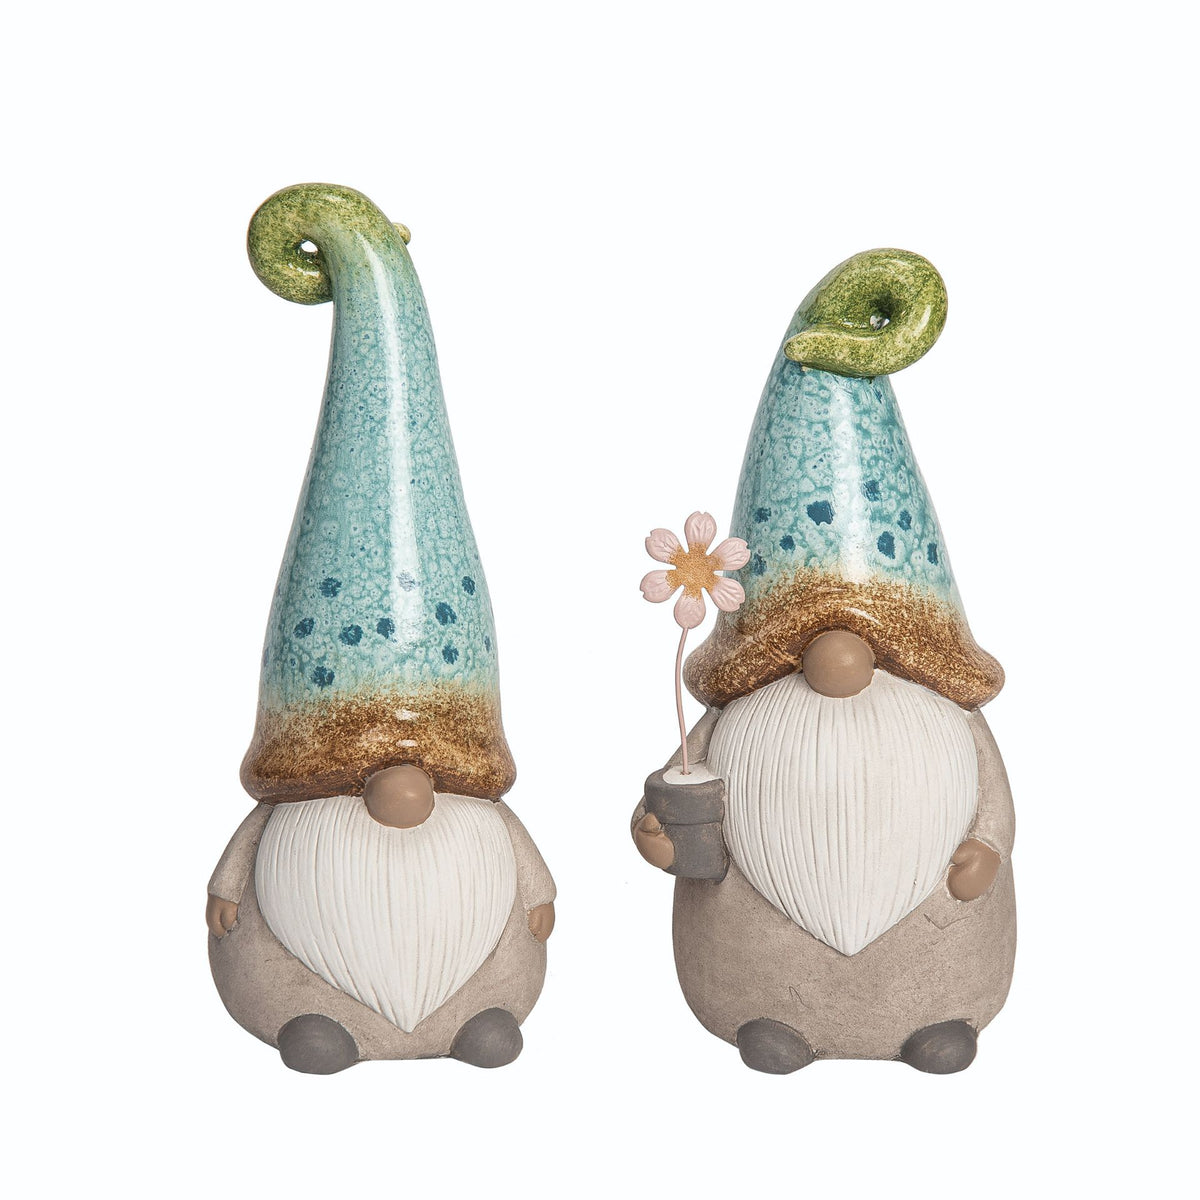  Garden Flower Gnome for sale-Every Girl Loves Sparkles 